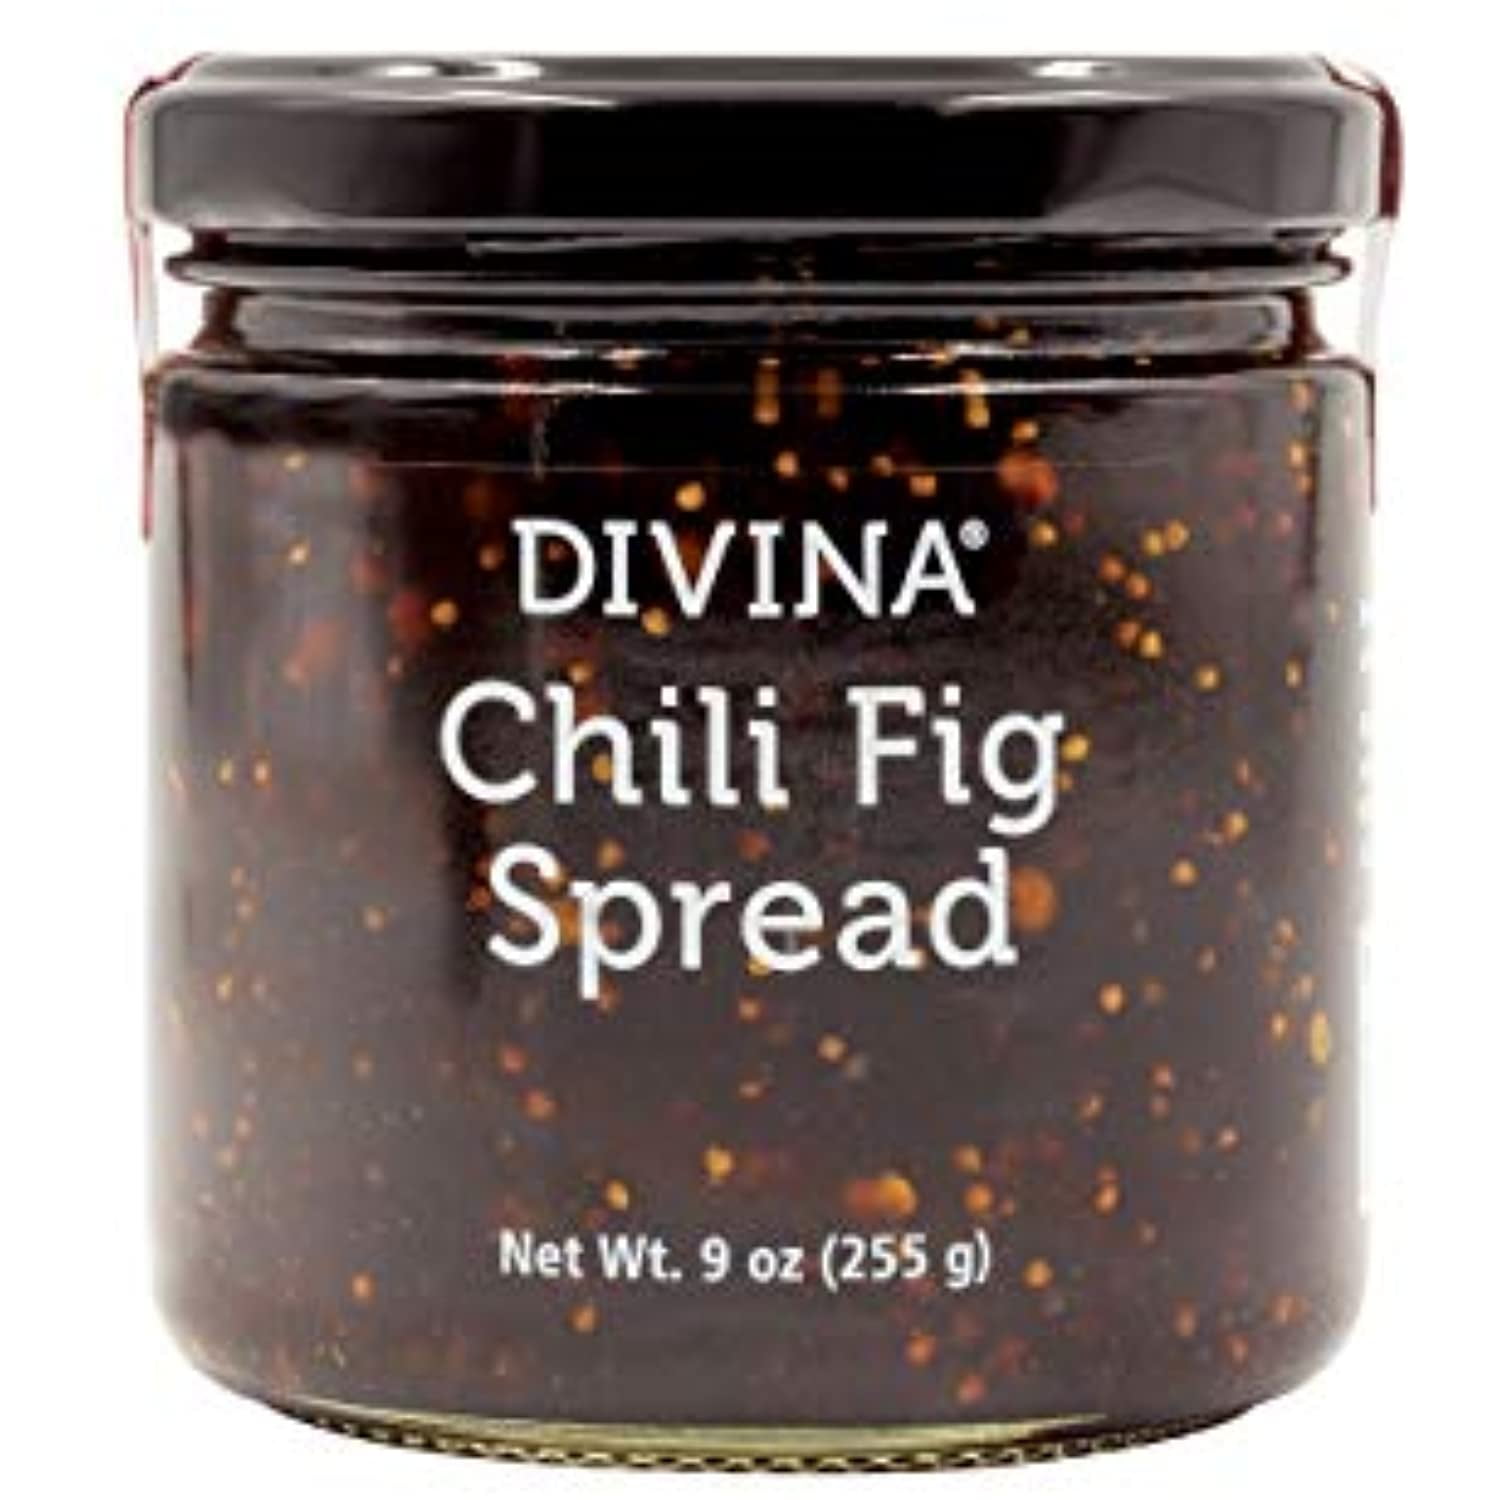 Divina Chili Fig Spread Jam, 9 Ounce - Walmart.com